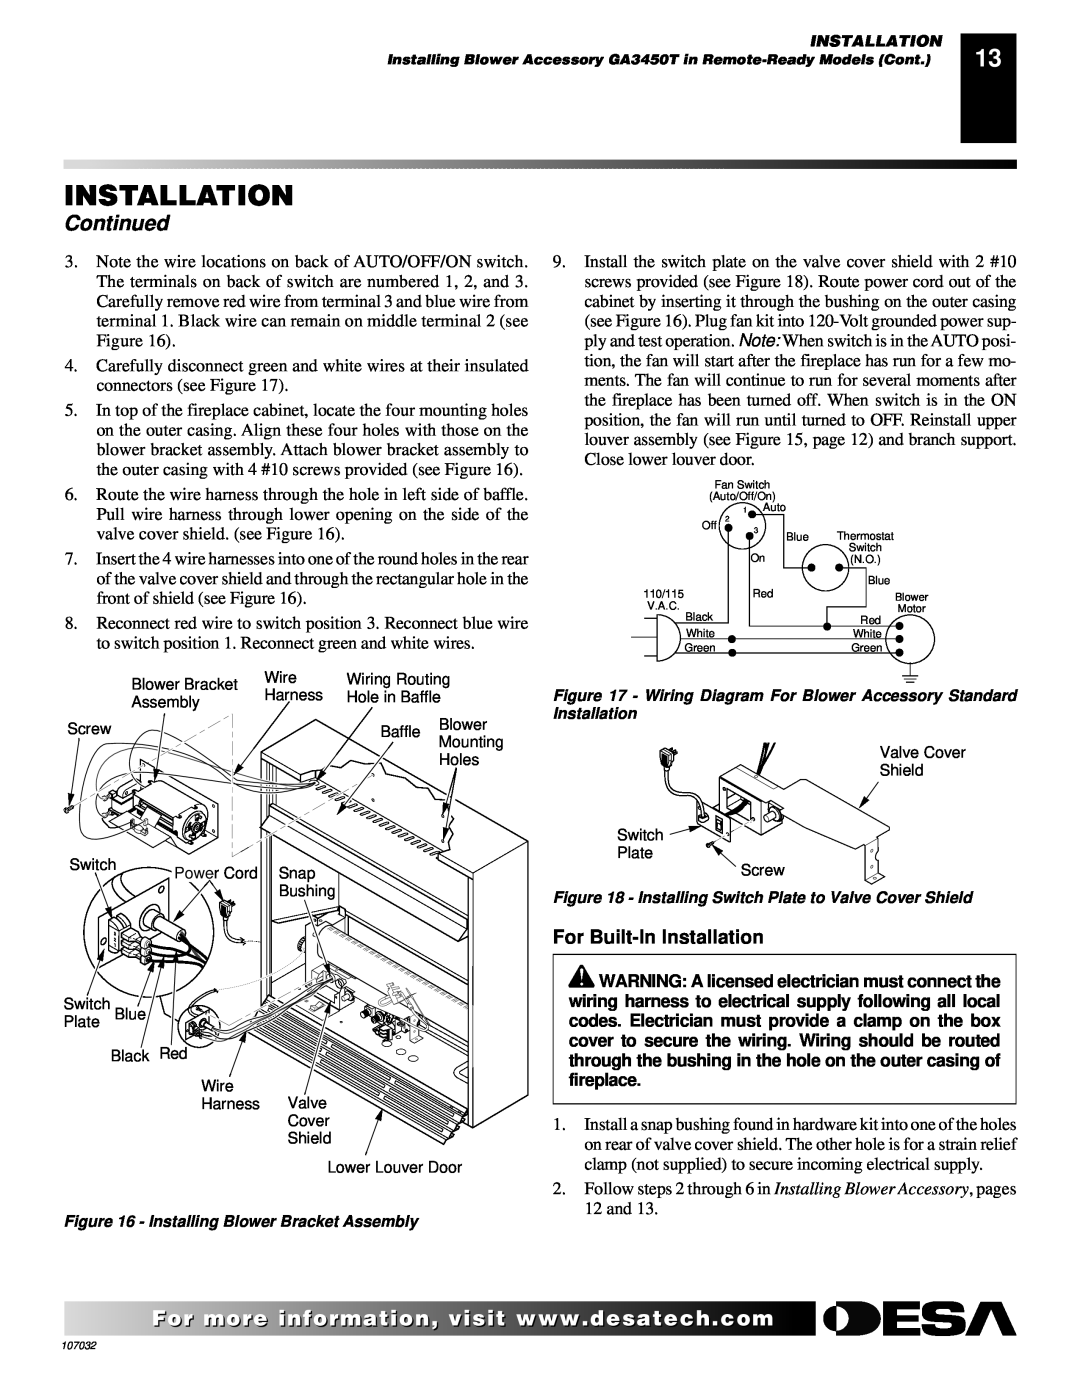 Desa VMH10TPB installation manual For Built-InInstallation, Continued 